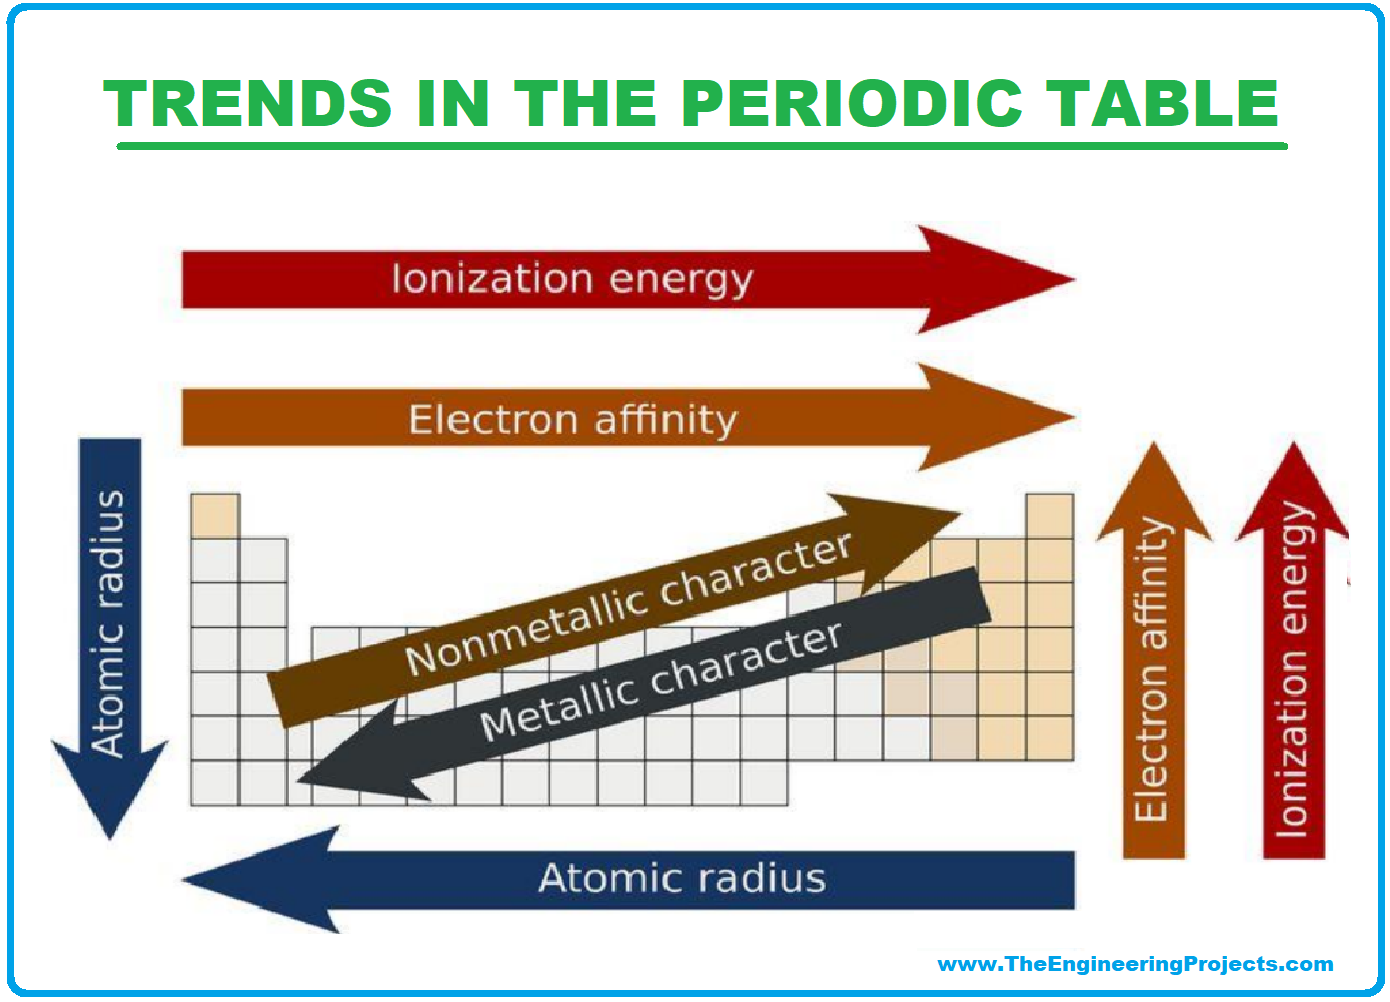 History of Periodic Table, Periodic Table, periodic table deifnition, trends in periodic table, trends of periodic table, periodic table trends